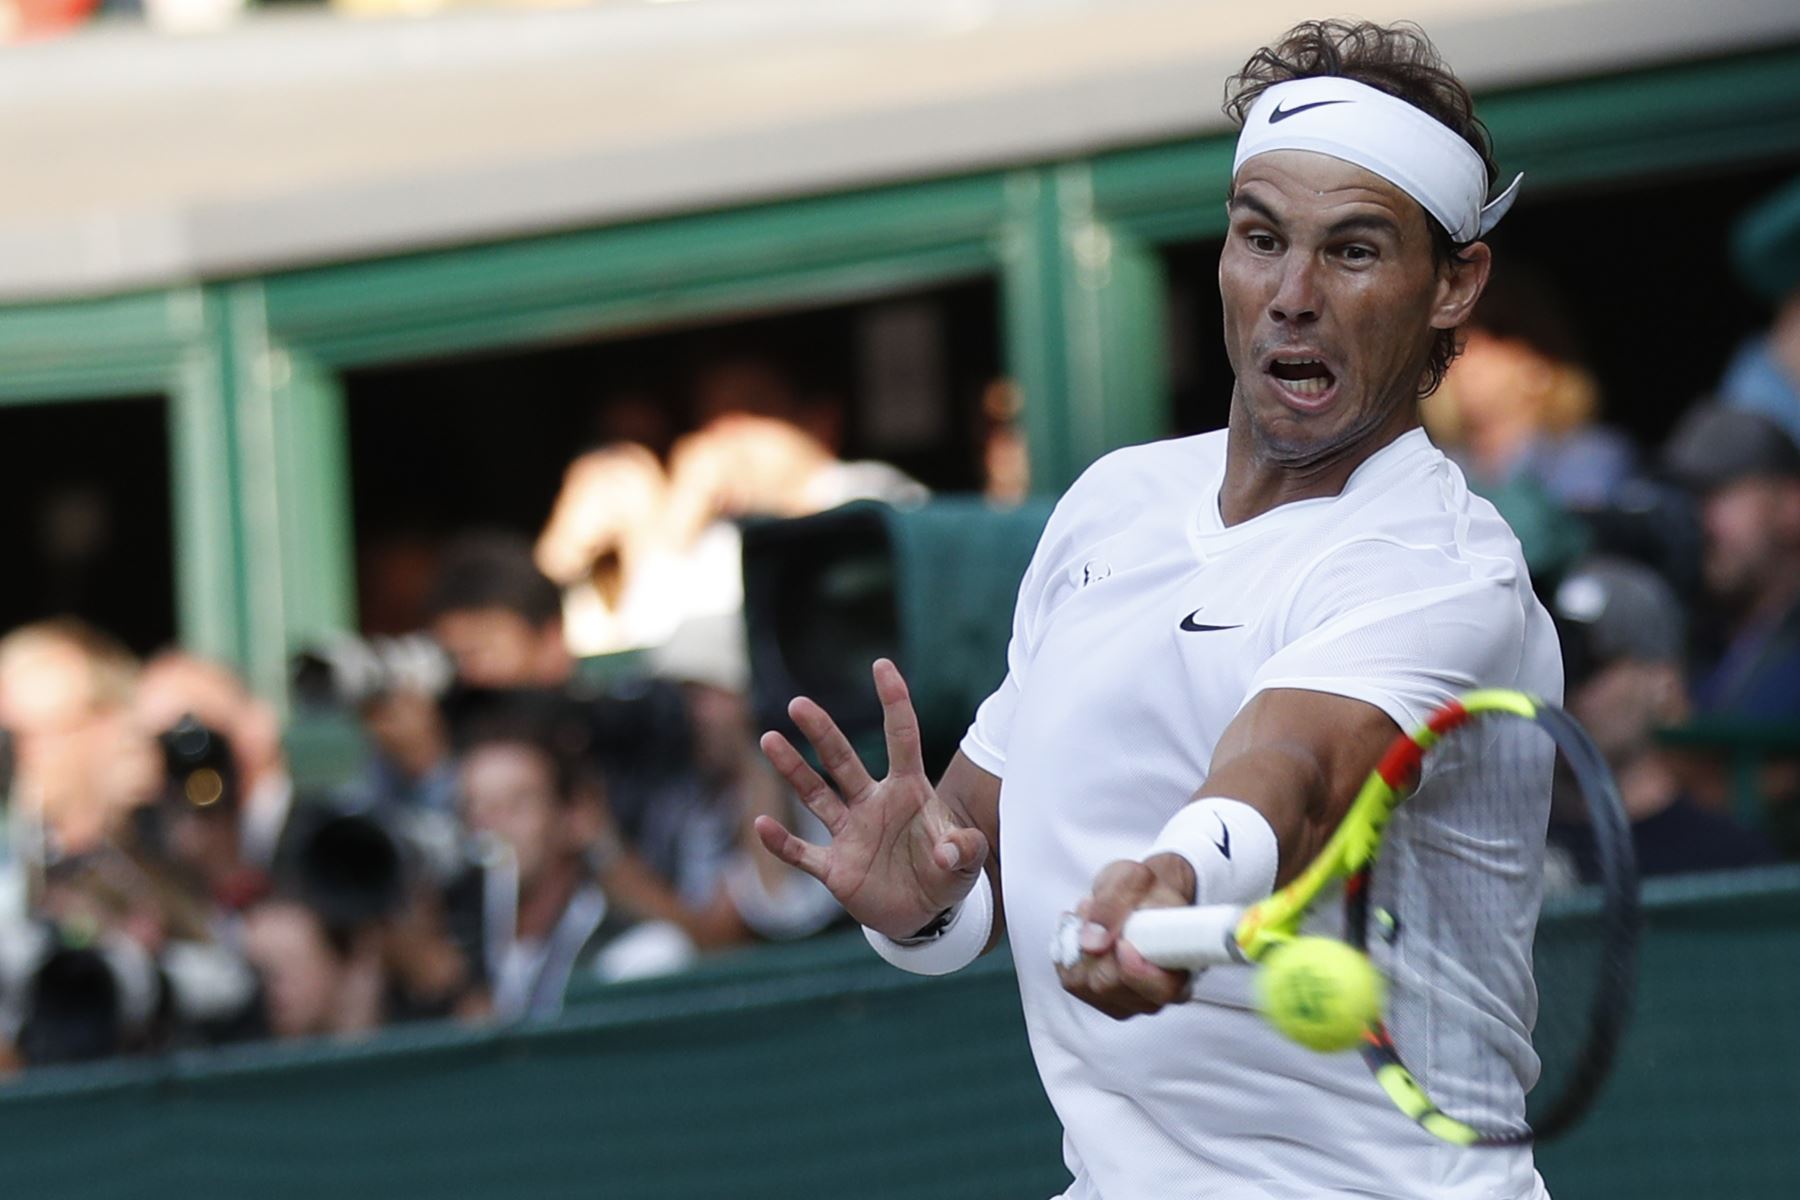 El suizo Roger Federer jugará la final de Wimbledon ante el serbio Novak Djokovic, luego de derrotar al español Rafael Nadal por 7-6 (3), 1-6, 6-3 y 6-4. Foto: AFP